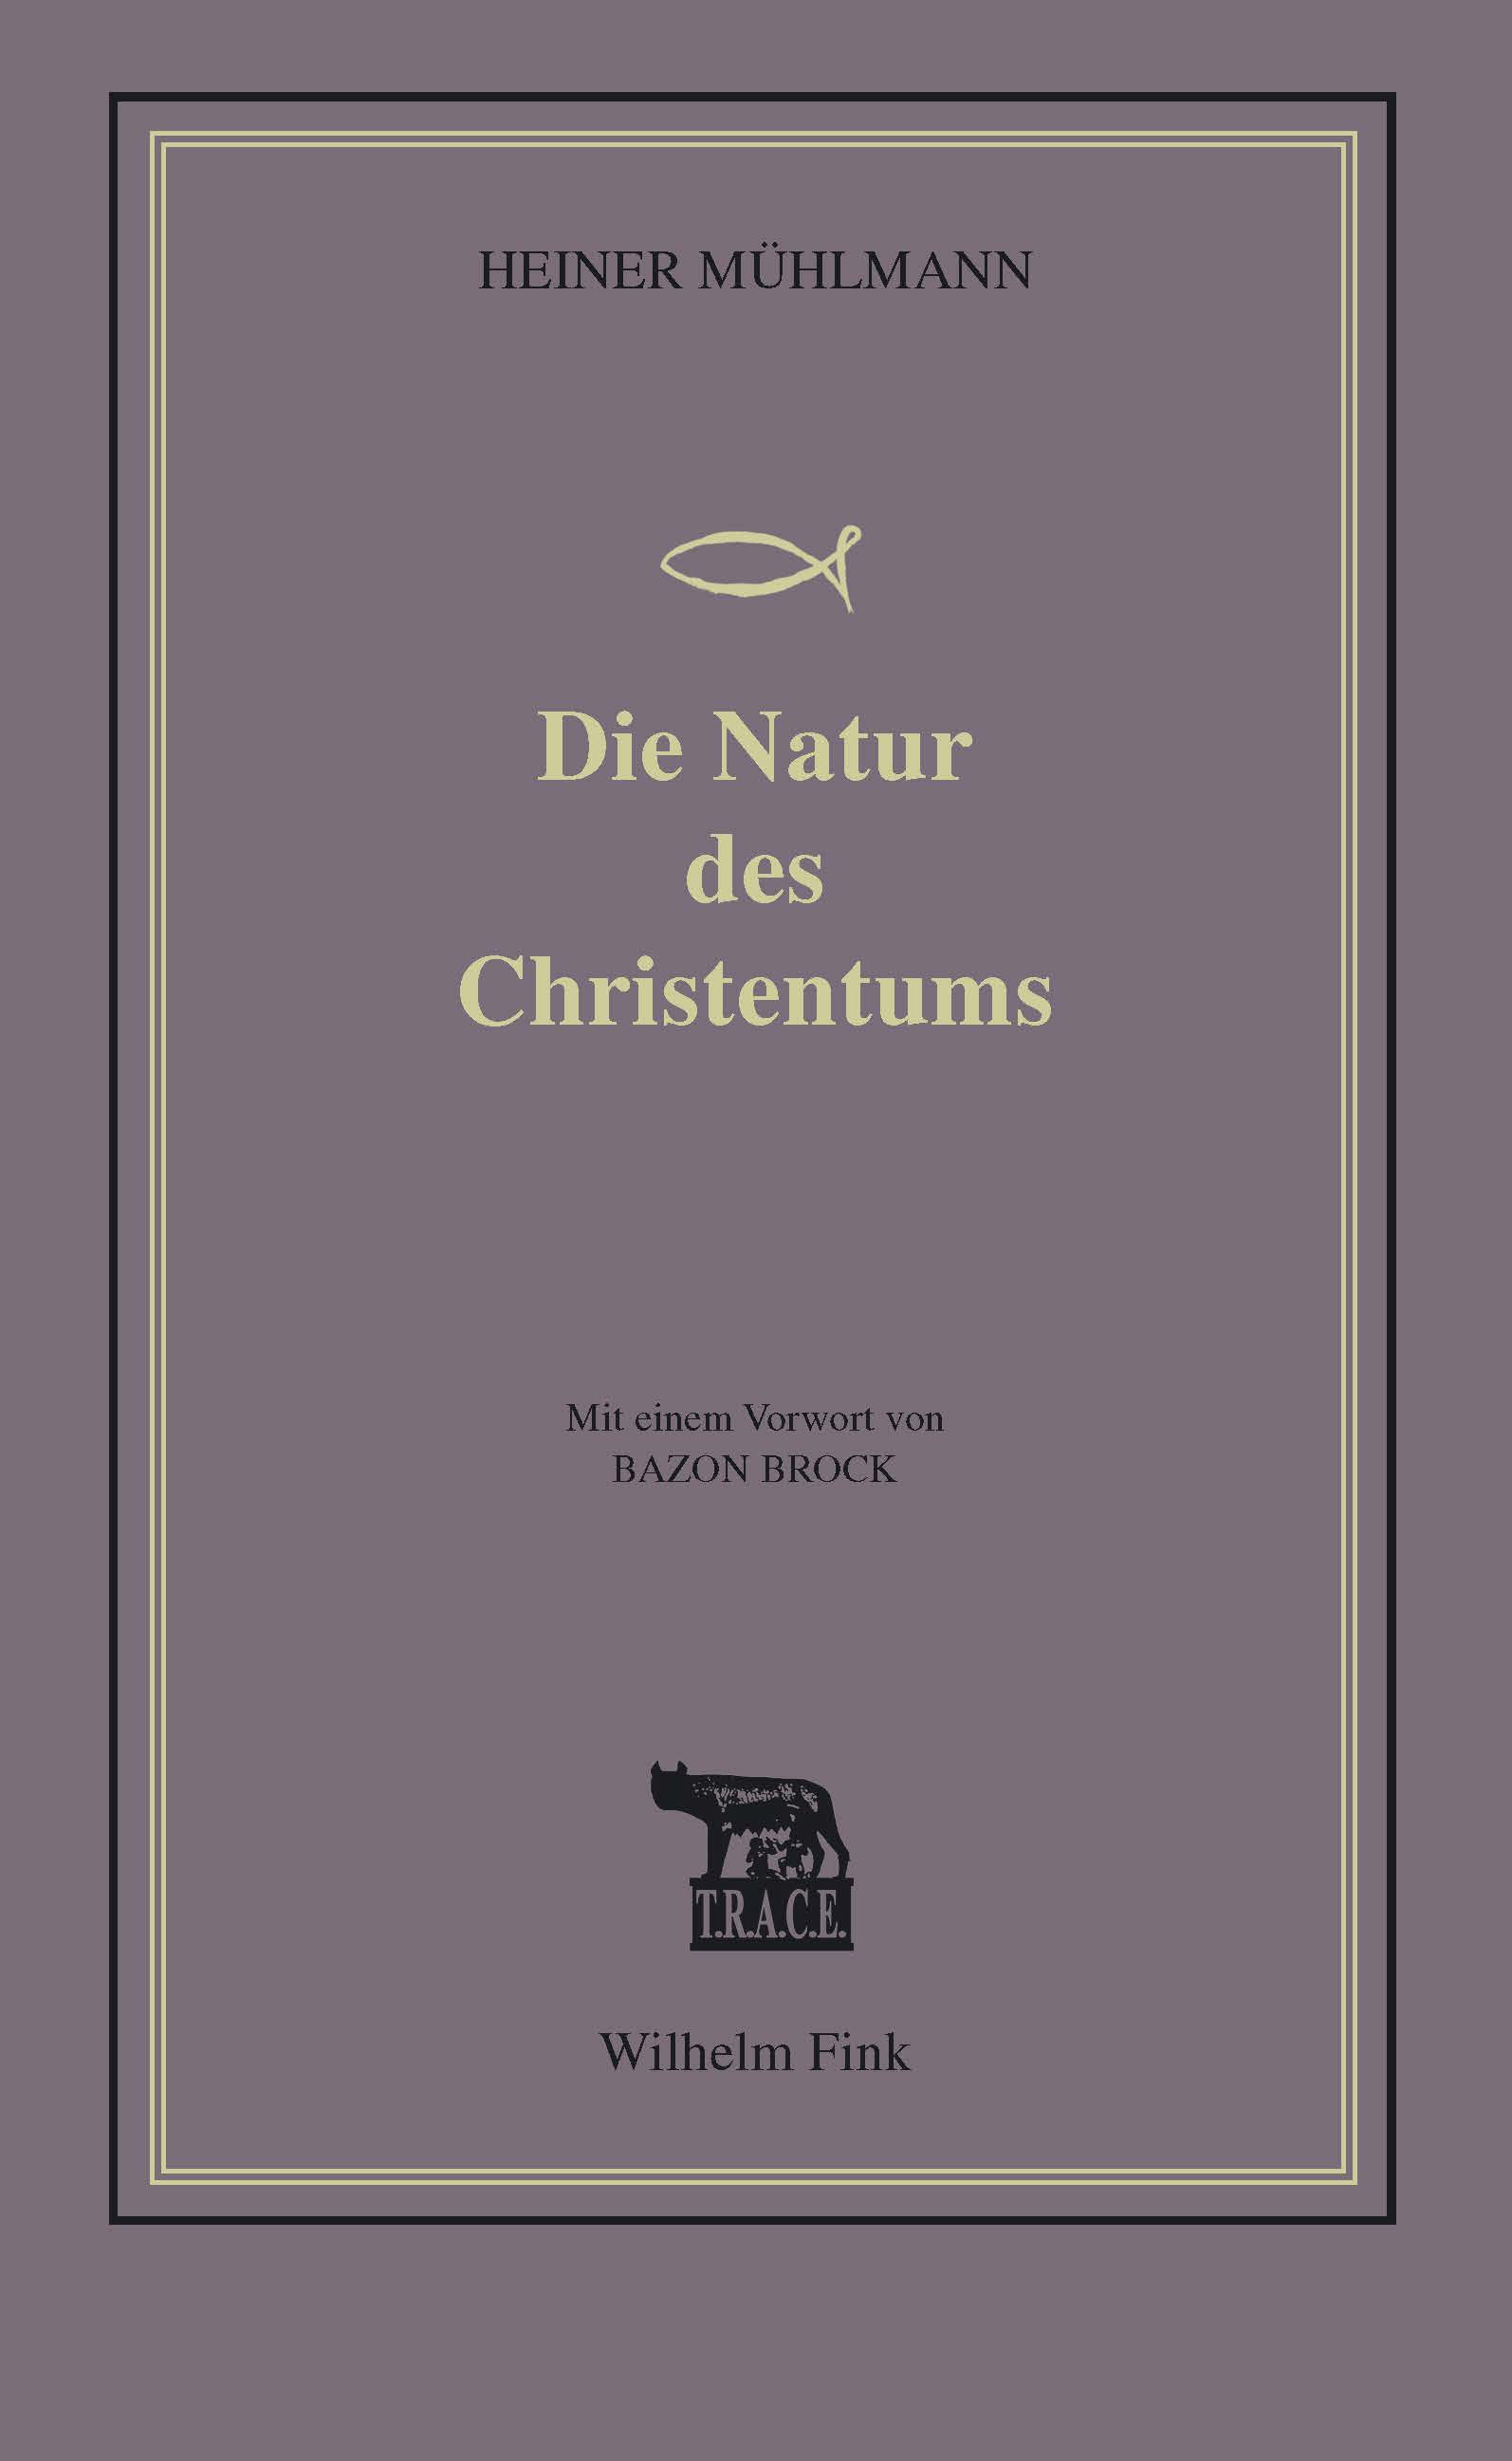 Heiner Mühlmann: Die Natur des Christentums, Bild: Paderborn: Fink, 2017.